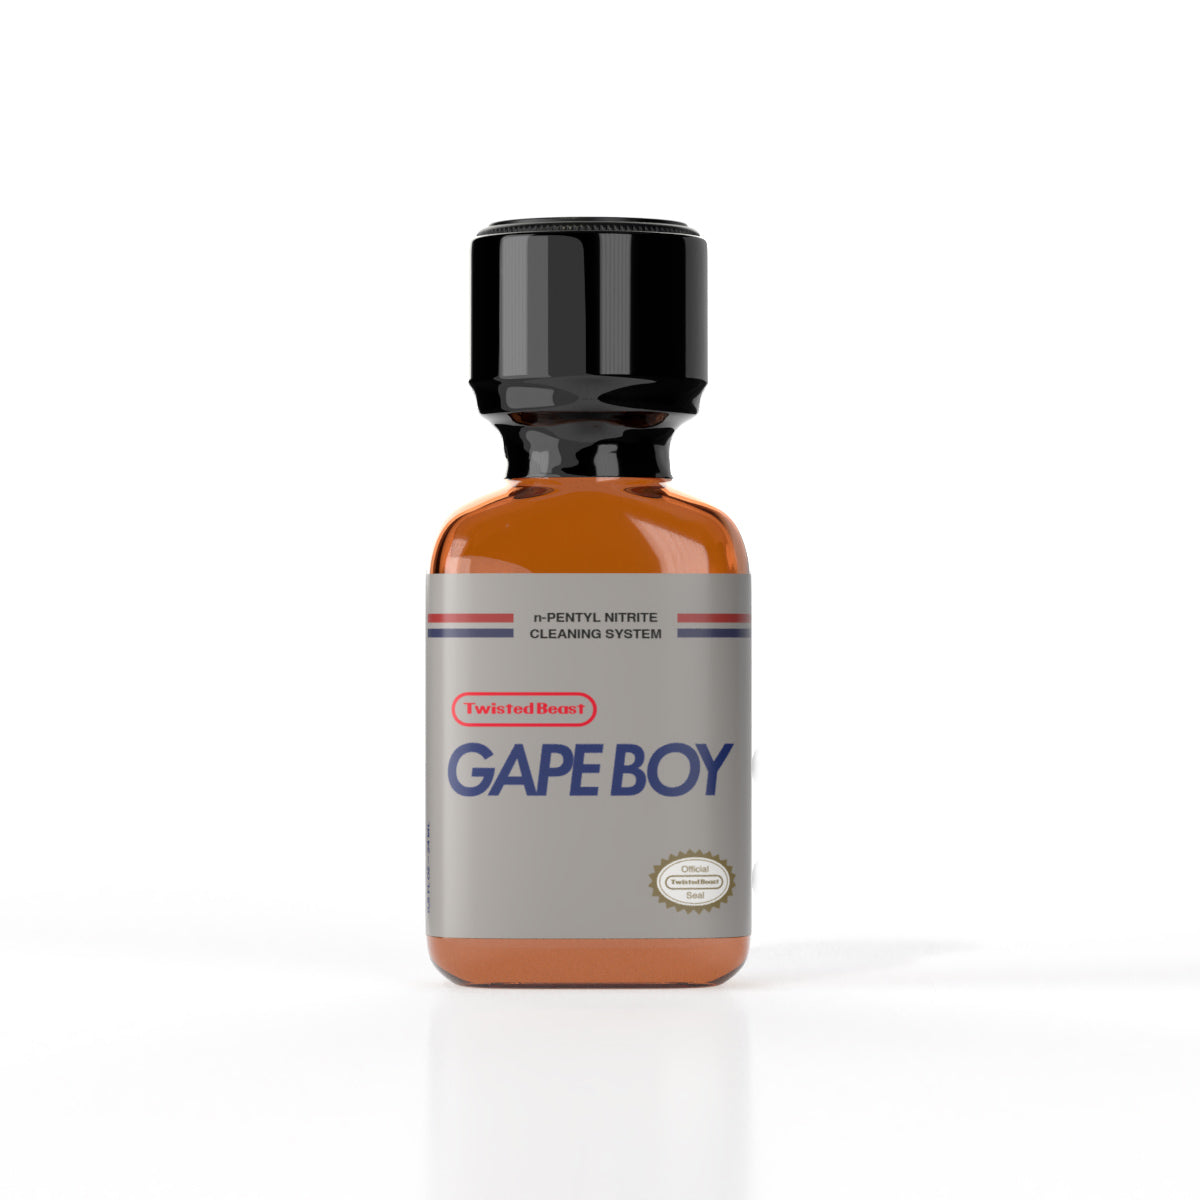 A bottle of Gape Boy Poppers.